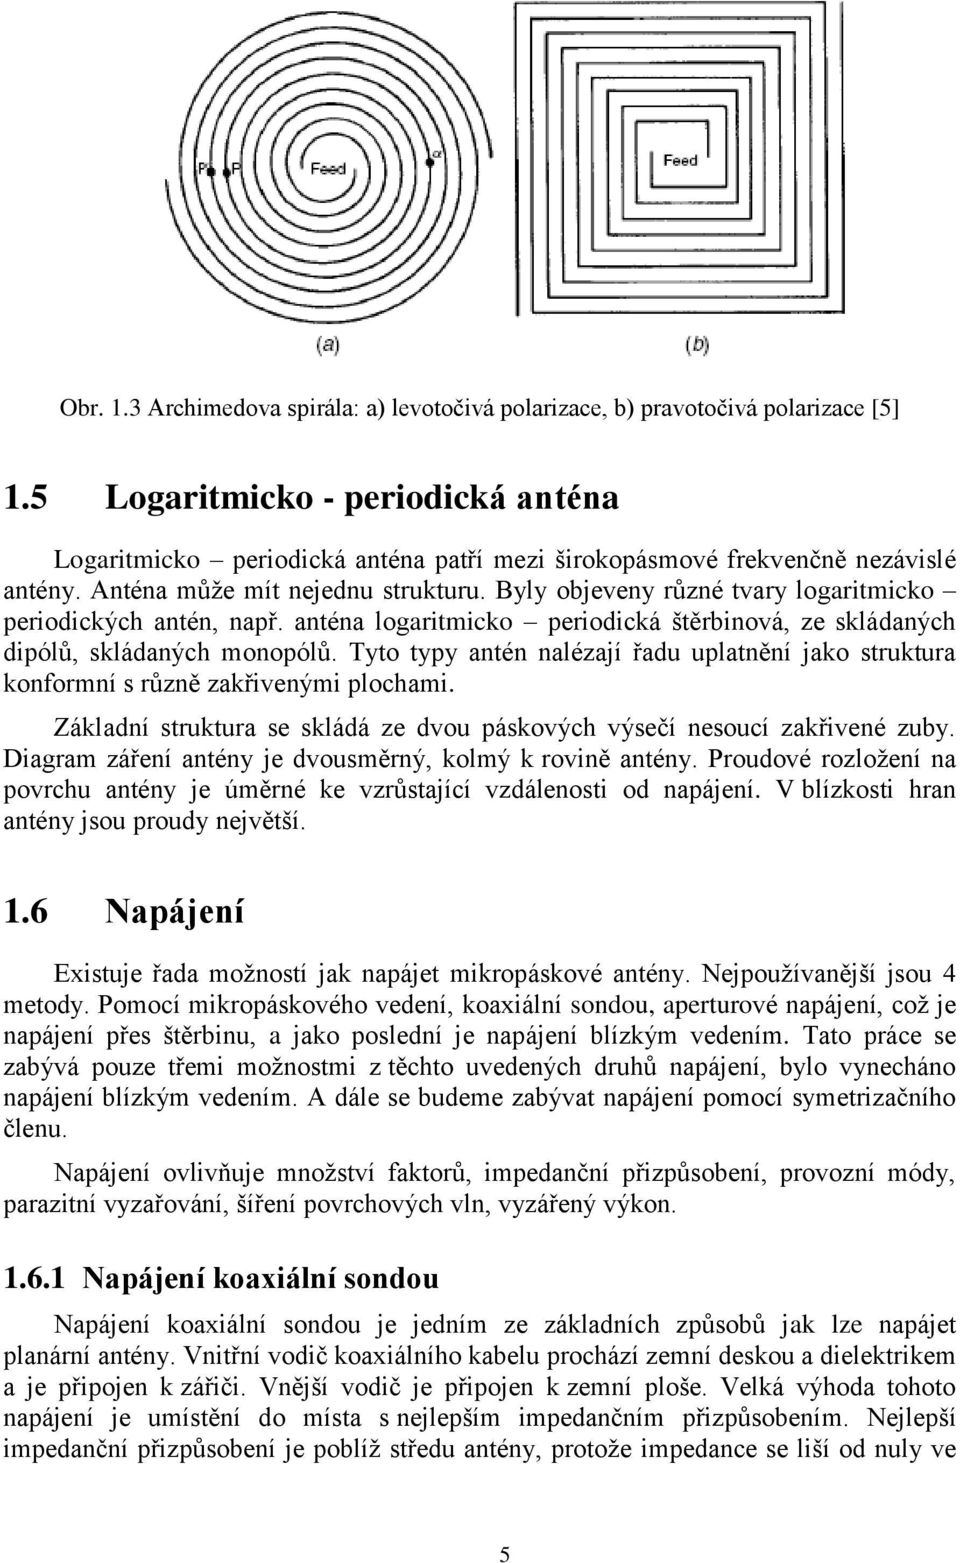 Byly objeveny různé tvary logaritmicko periodických antén, např. anténa logaritmicko periodická štěrbinová, ze skládaných dipólů, skládaných monopólů.